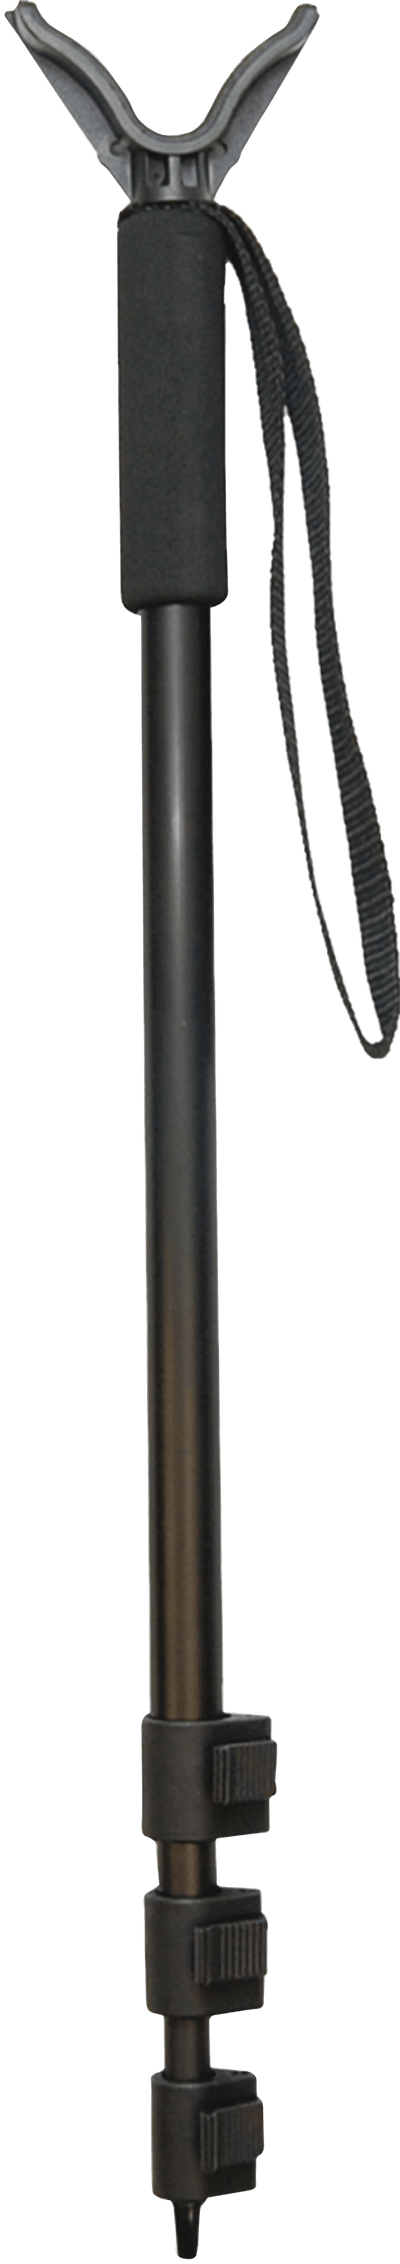 Allen Allen Swift Adjustable Shooting Stick Black 21.5-61 In. Firearm Accessories